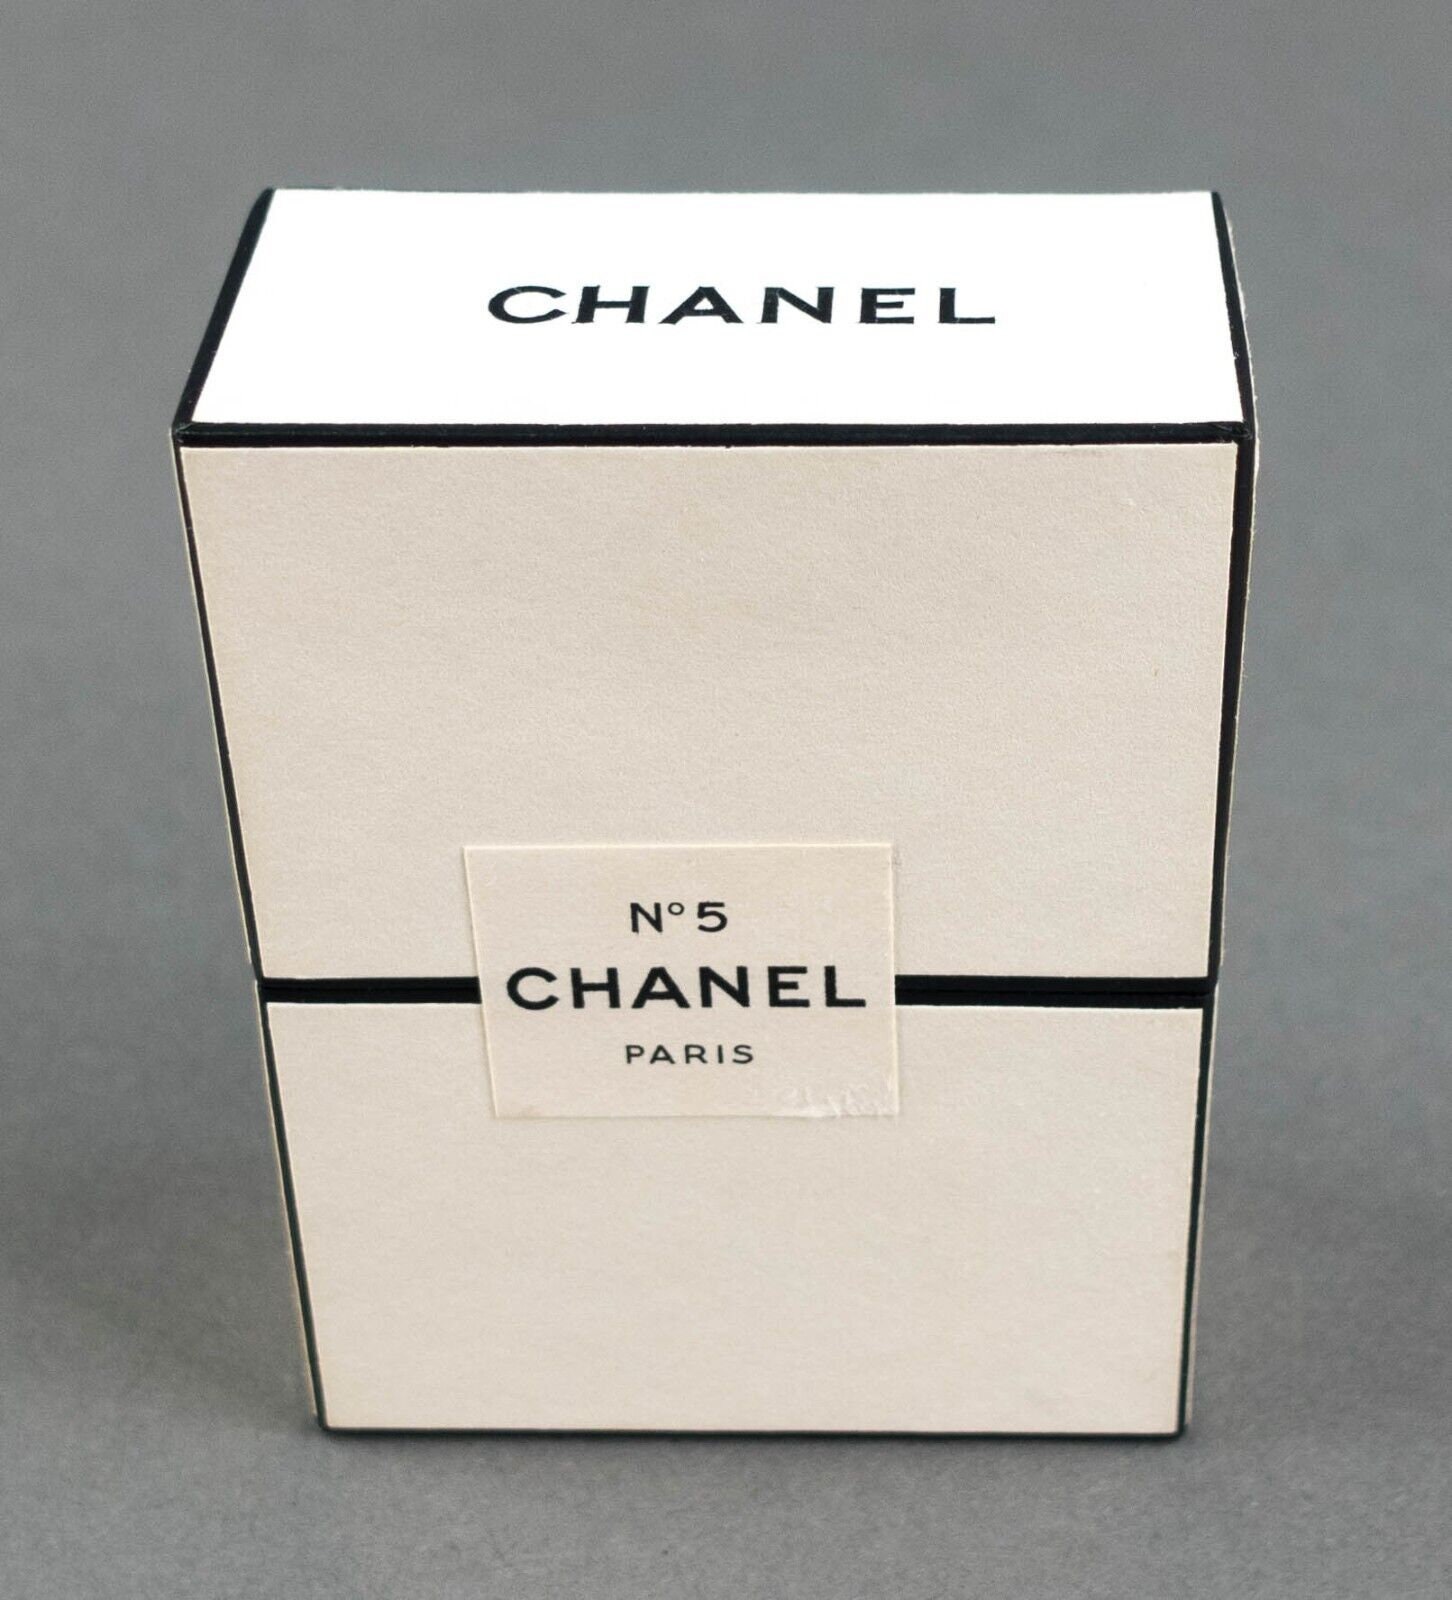 A BOXED VINTAGE CHANEL NO.5 EXTRAIT PM NO. 201 DE PARFUM BOTTLE